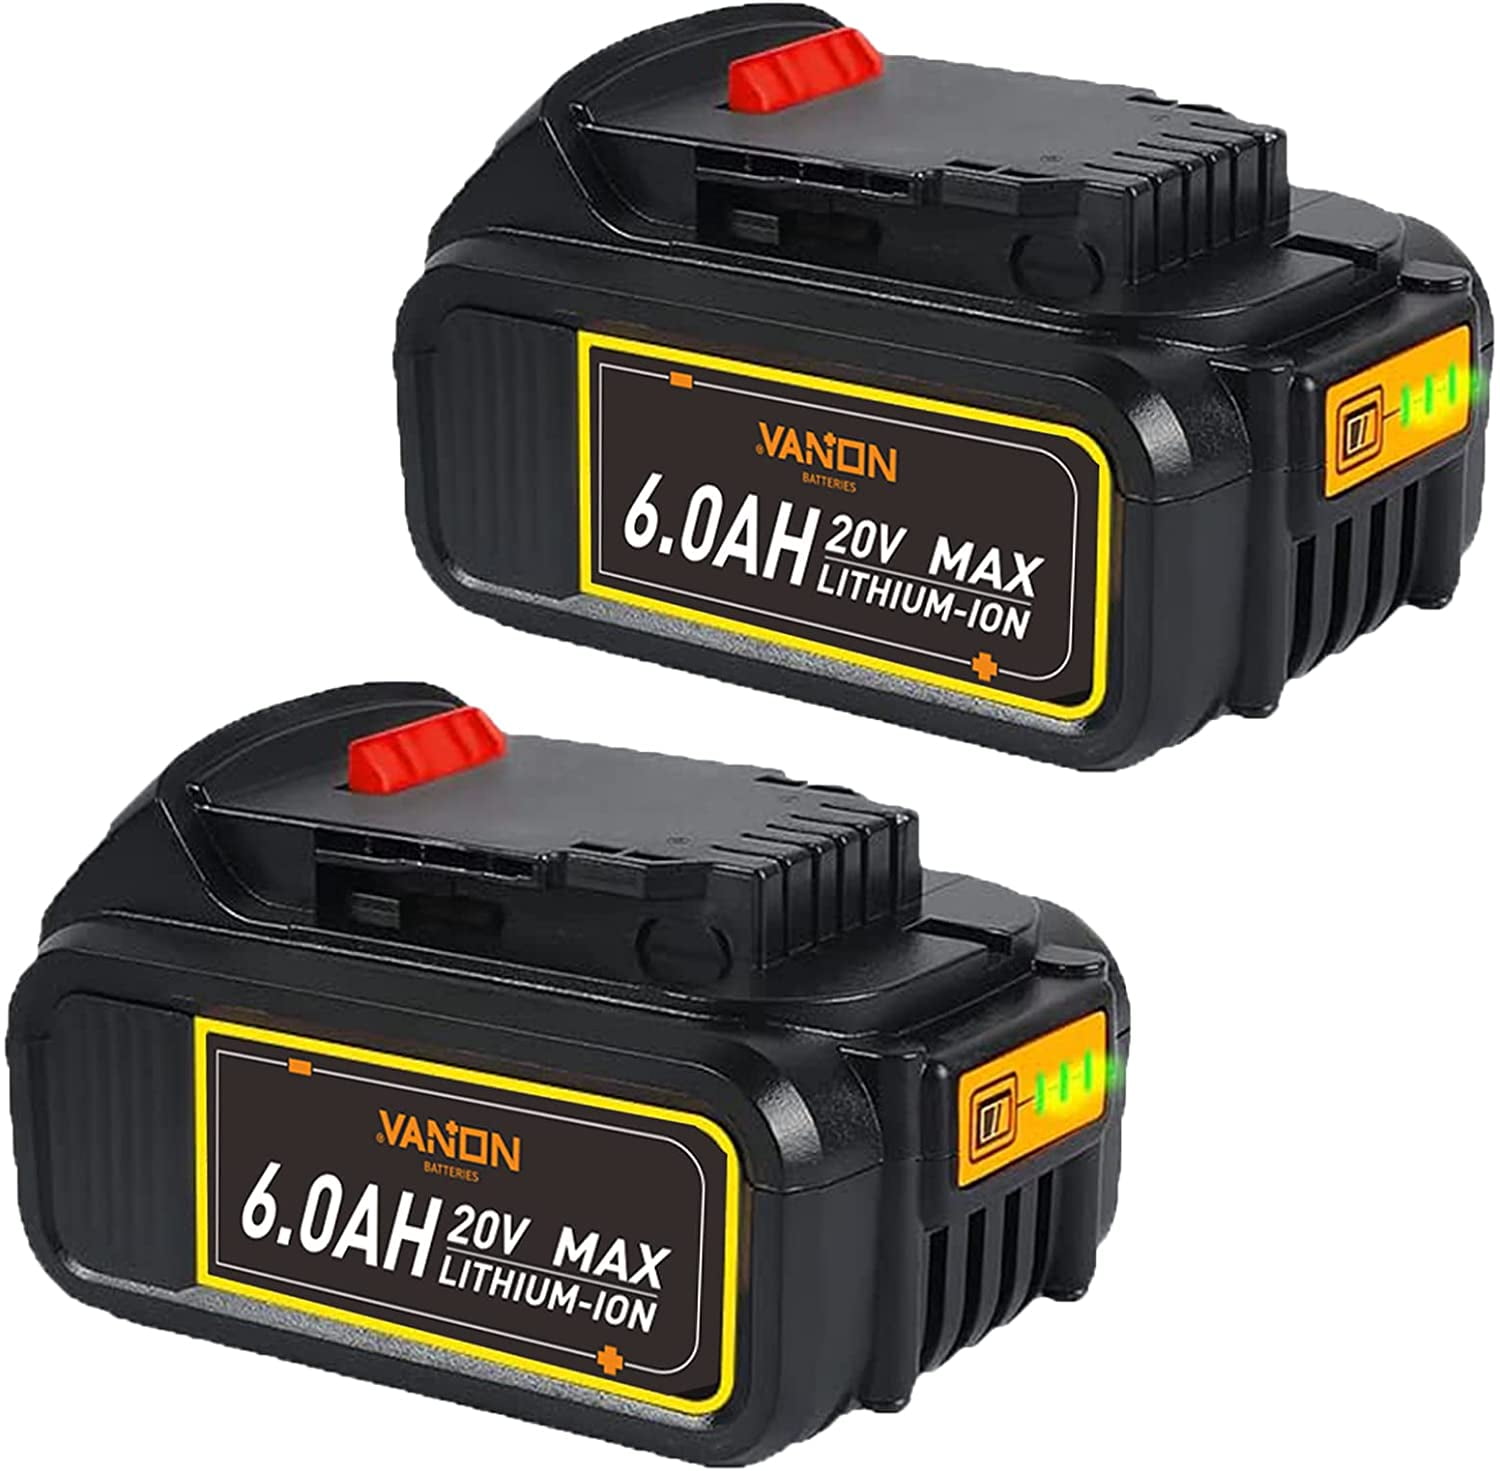 2Packs For 20V 20 Volt Max XR 2.0AH Lithium-Ion Battery DCB201 DCB203 DCB204 NEW 